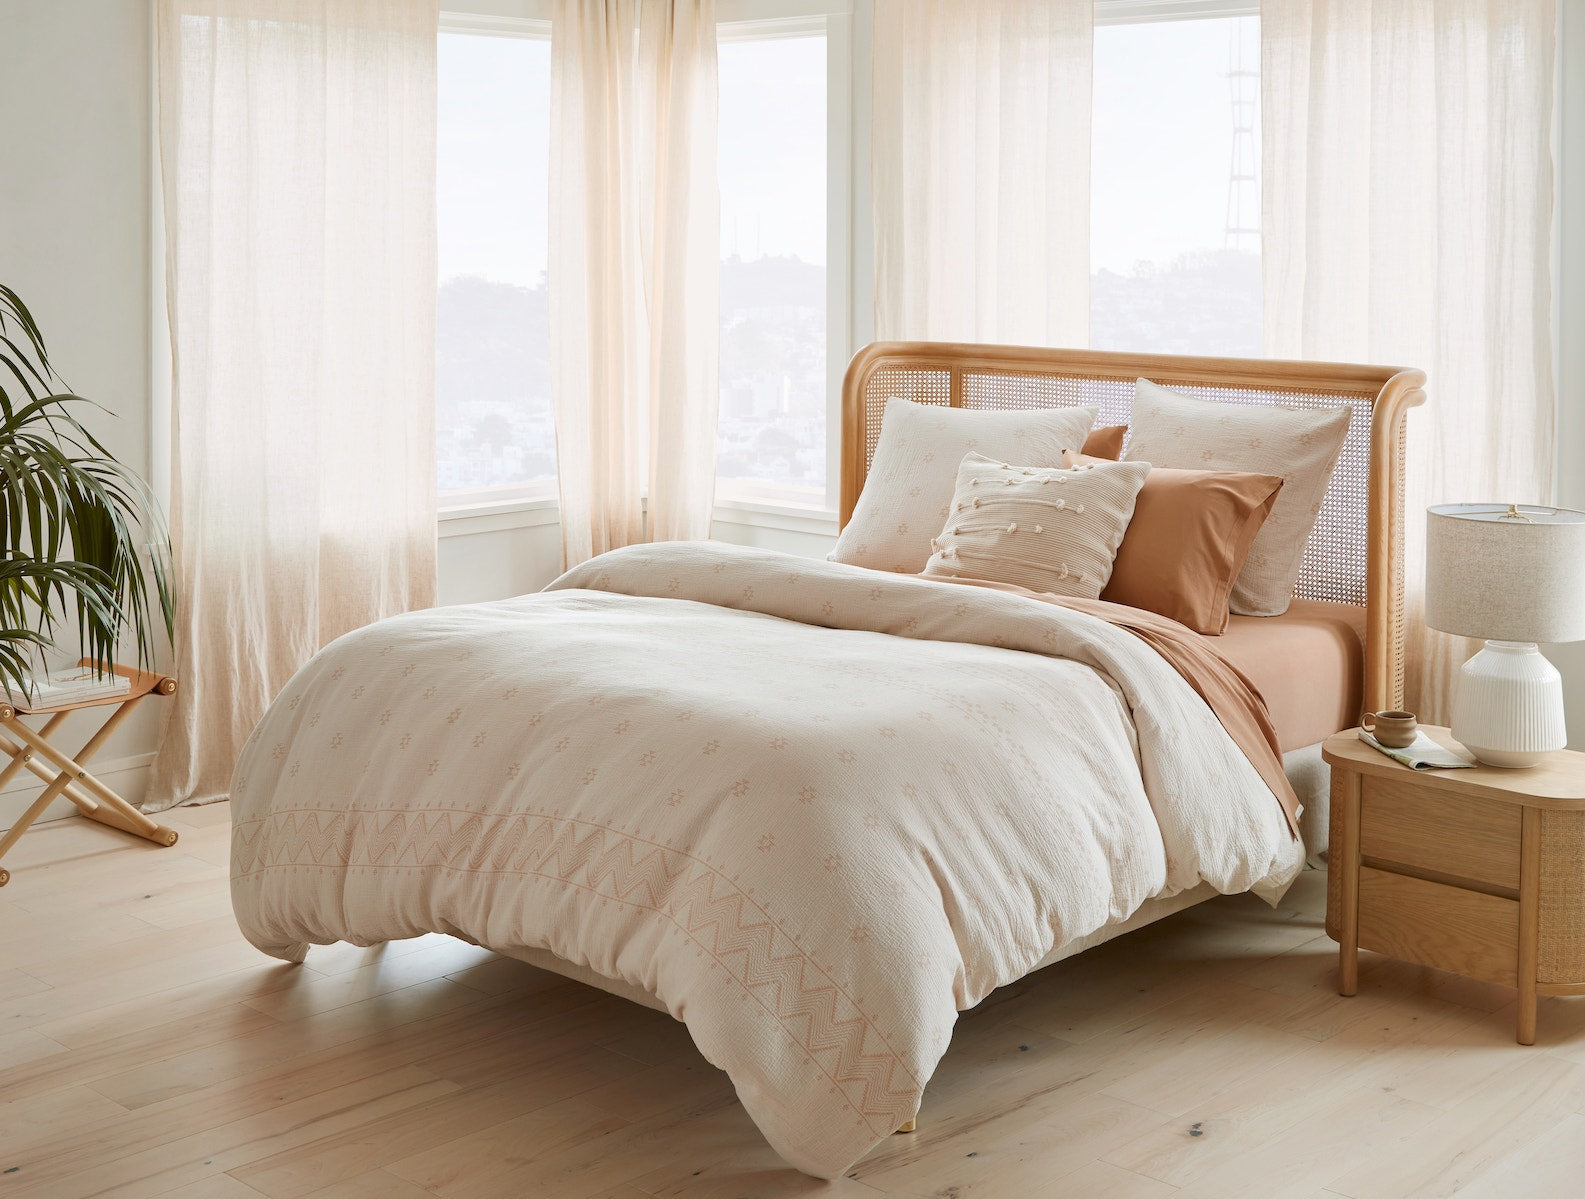 100% Organic Sheet Sets & Duvet Cover - Soaring Heart Natural Bed Company